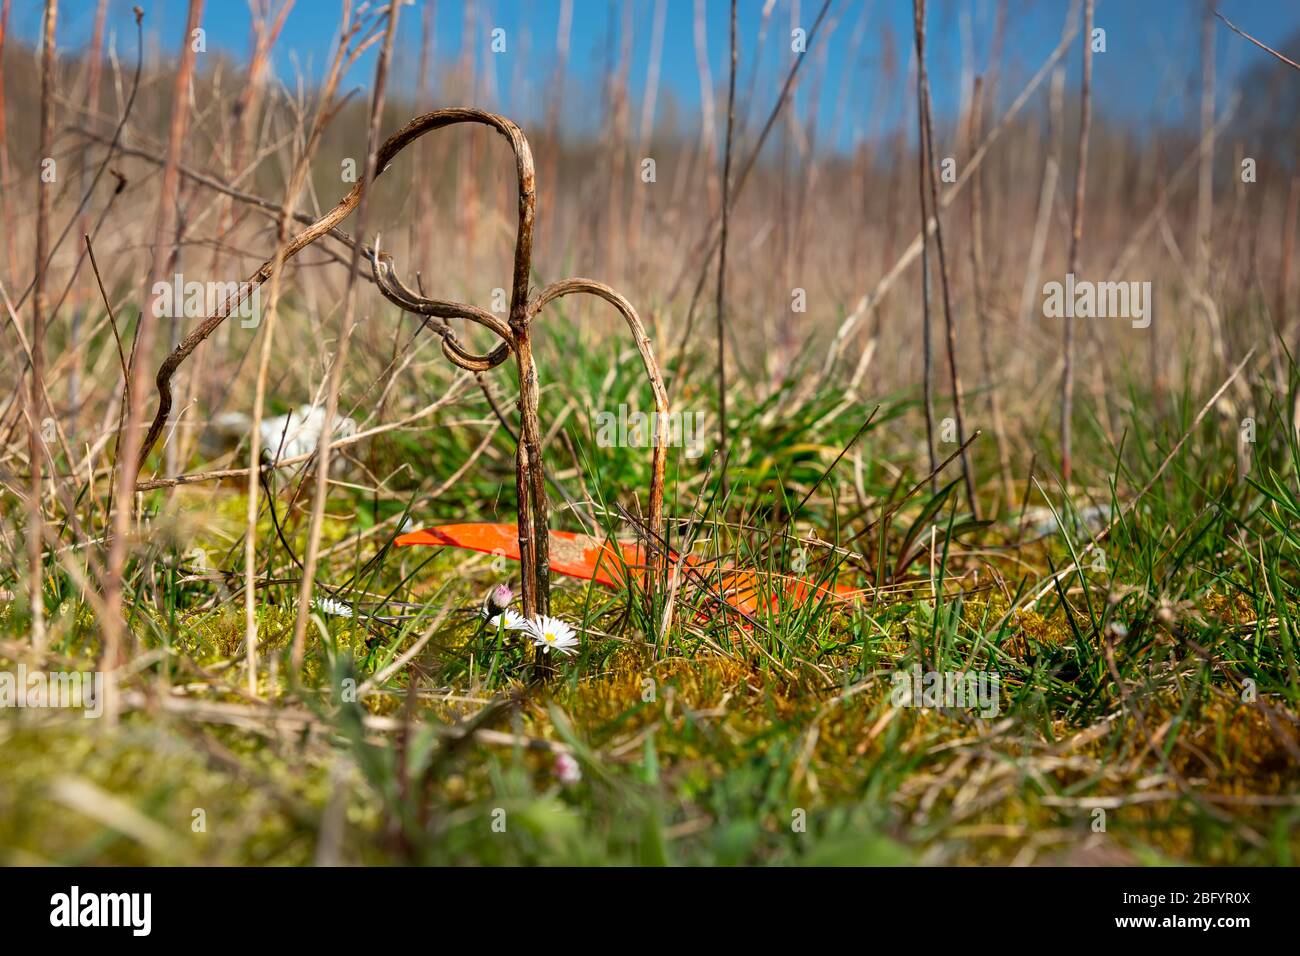 Gänseblümchen oder bellis perennis wachsen neben Plastikmüll auf einer überdachten Deponie in Bad Iburg im Nordwesten Deutschlands. Stockfoto